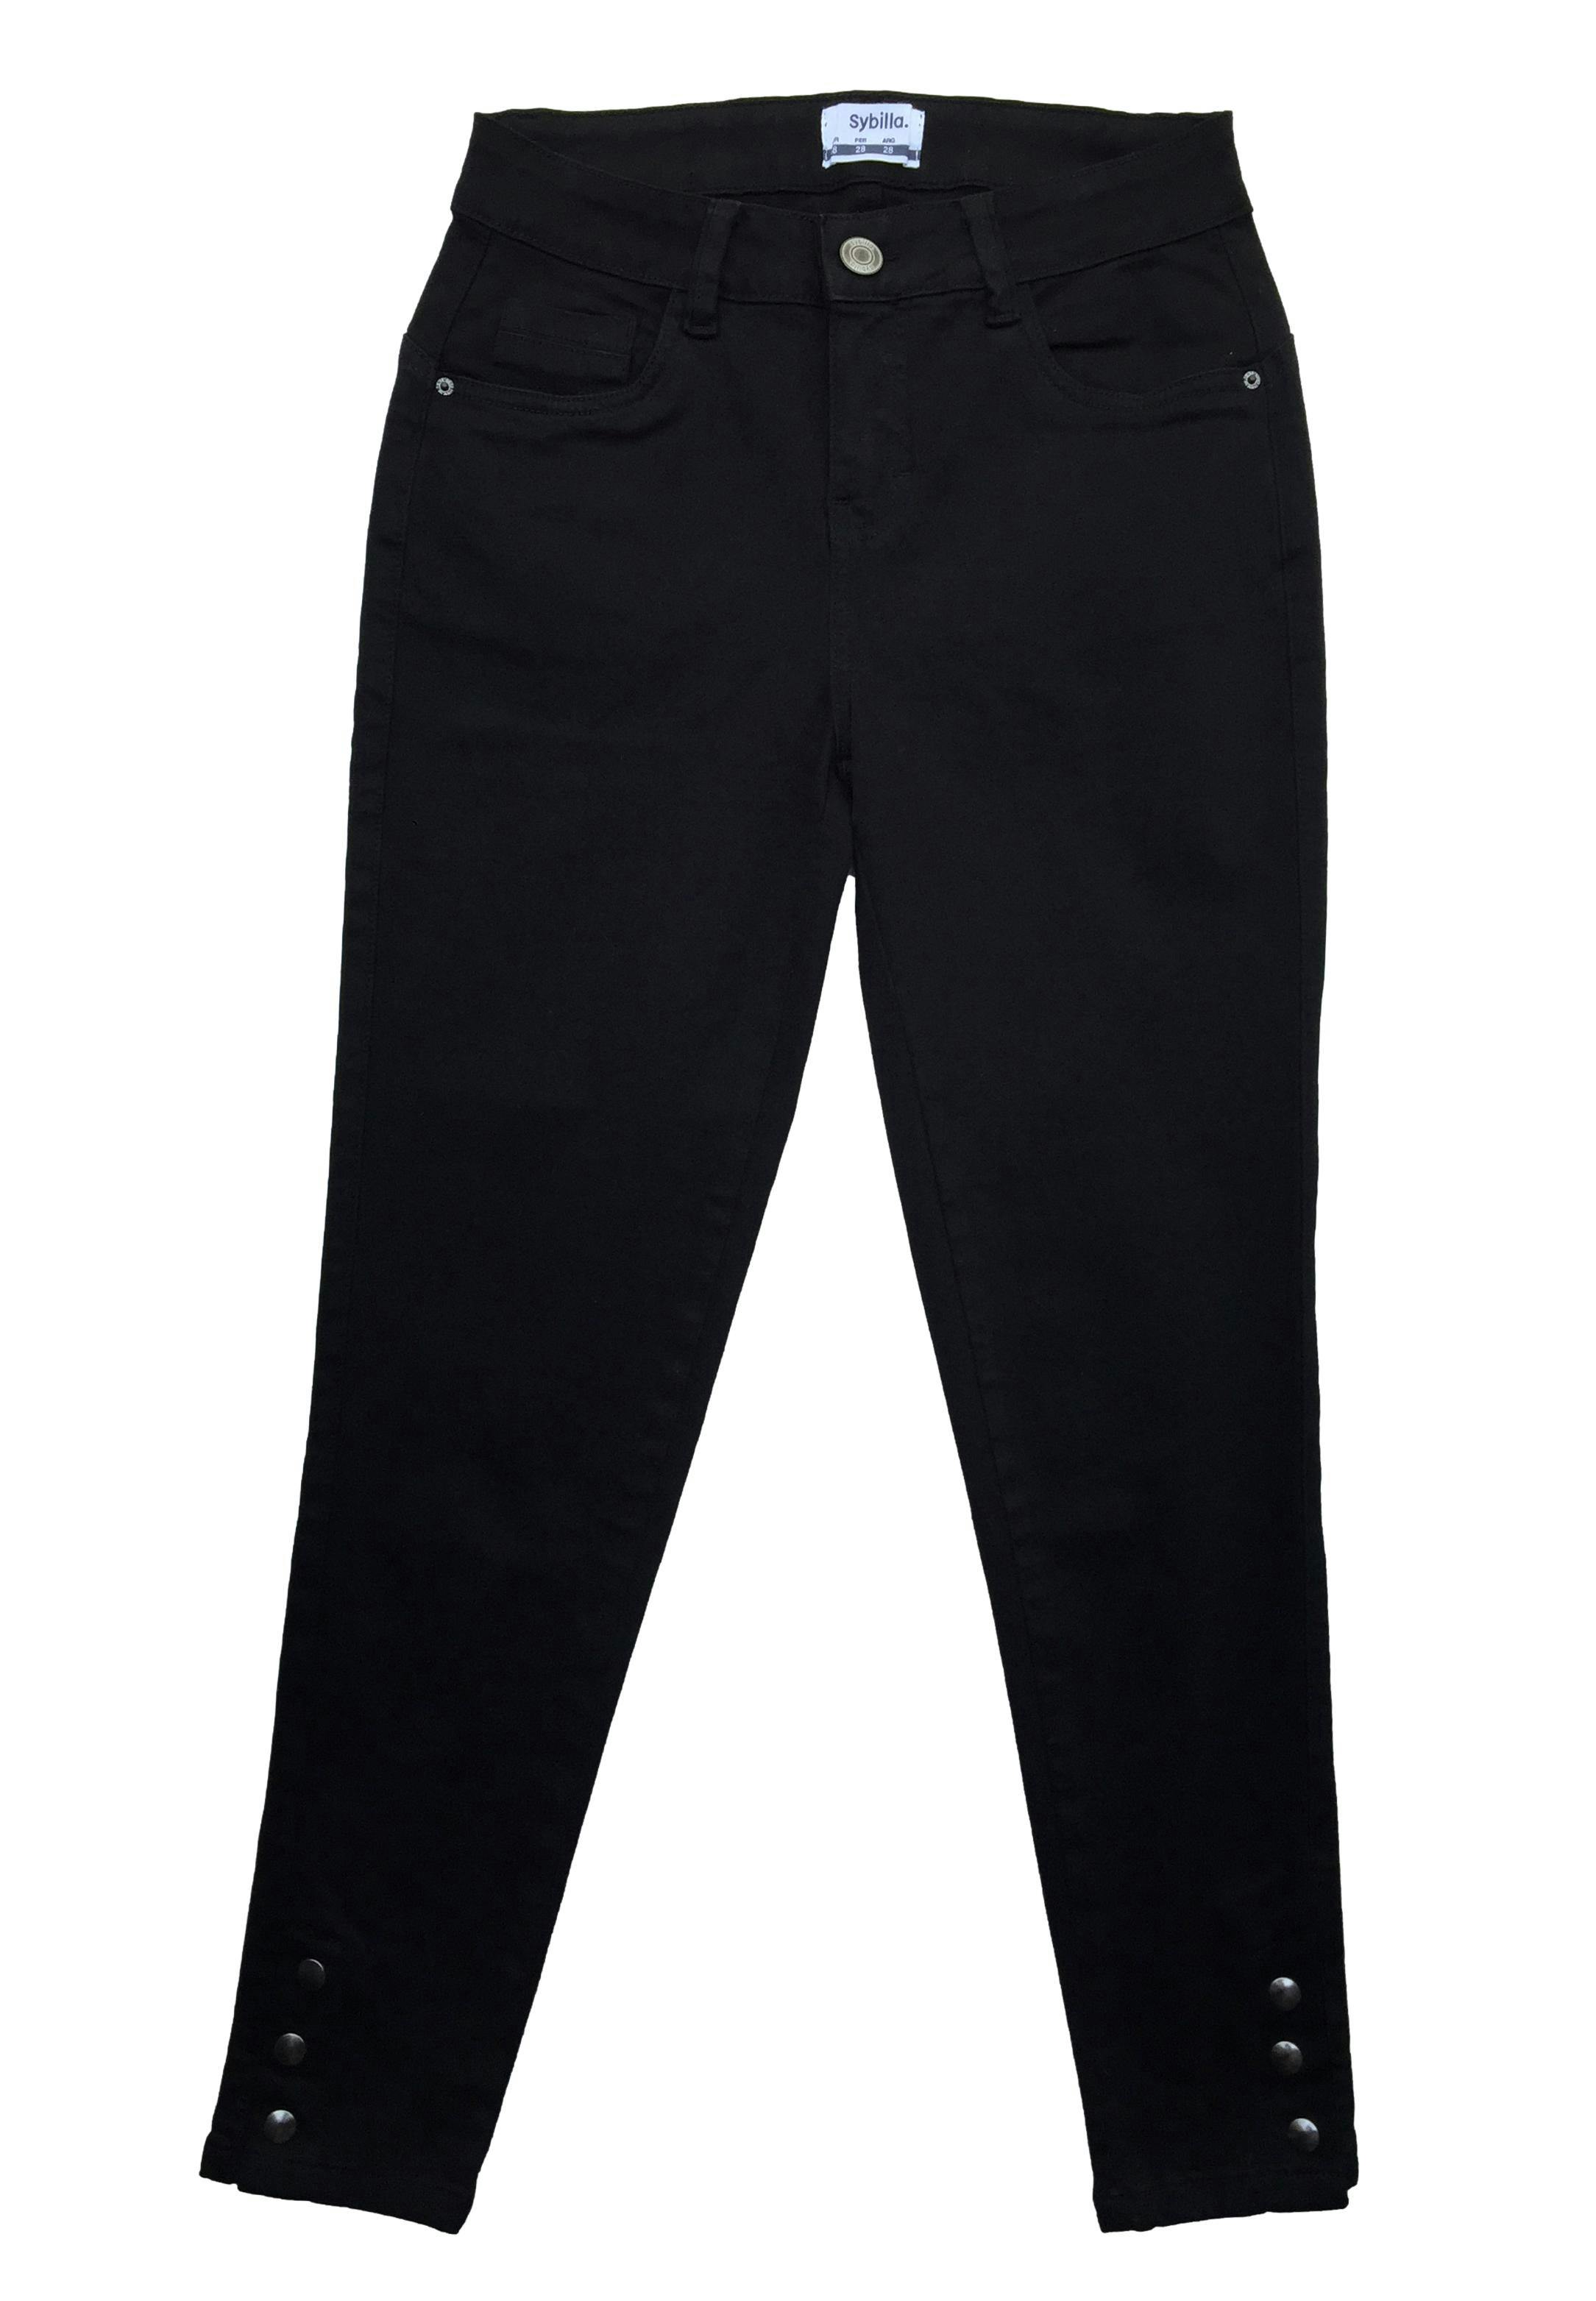 Skinny jean Sybilla negro con broches en la basta. Cintura 68cm Tiro 25cm Largo 90cm